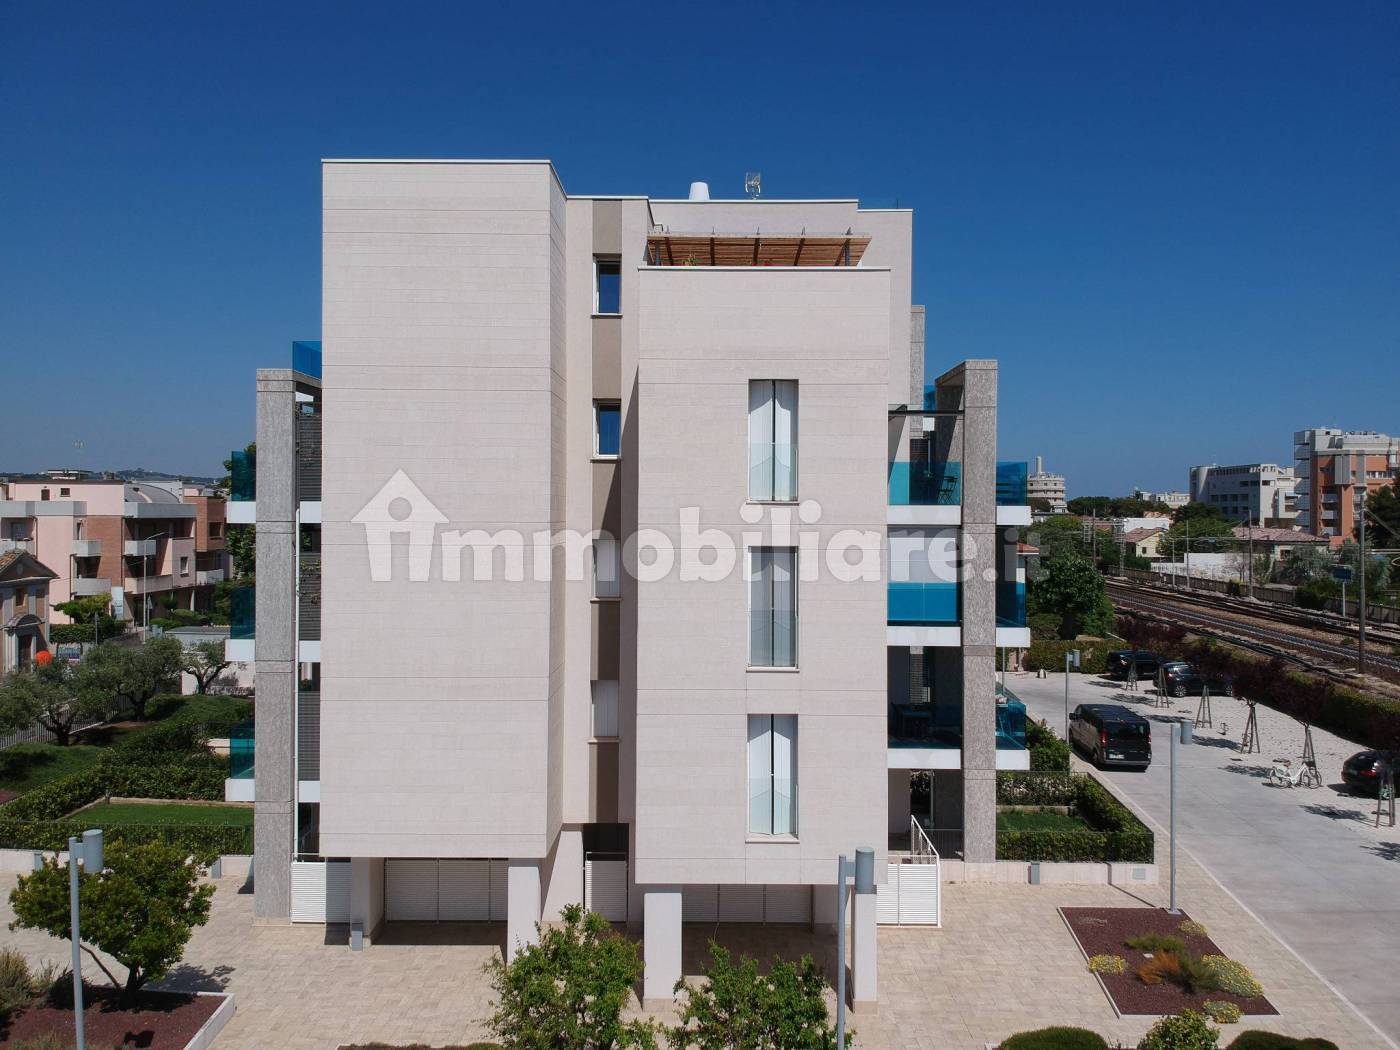 Nuove Costruzioni in vendita a Senigallia, rif. 97471798 - Immobiliare.it